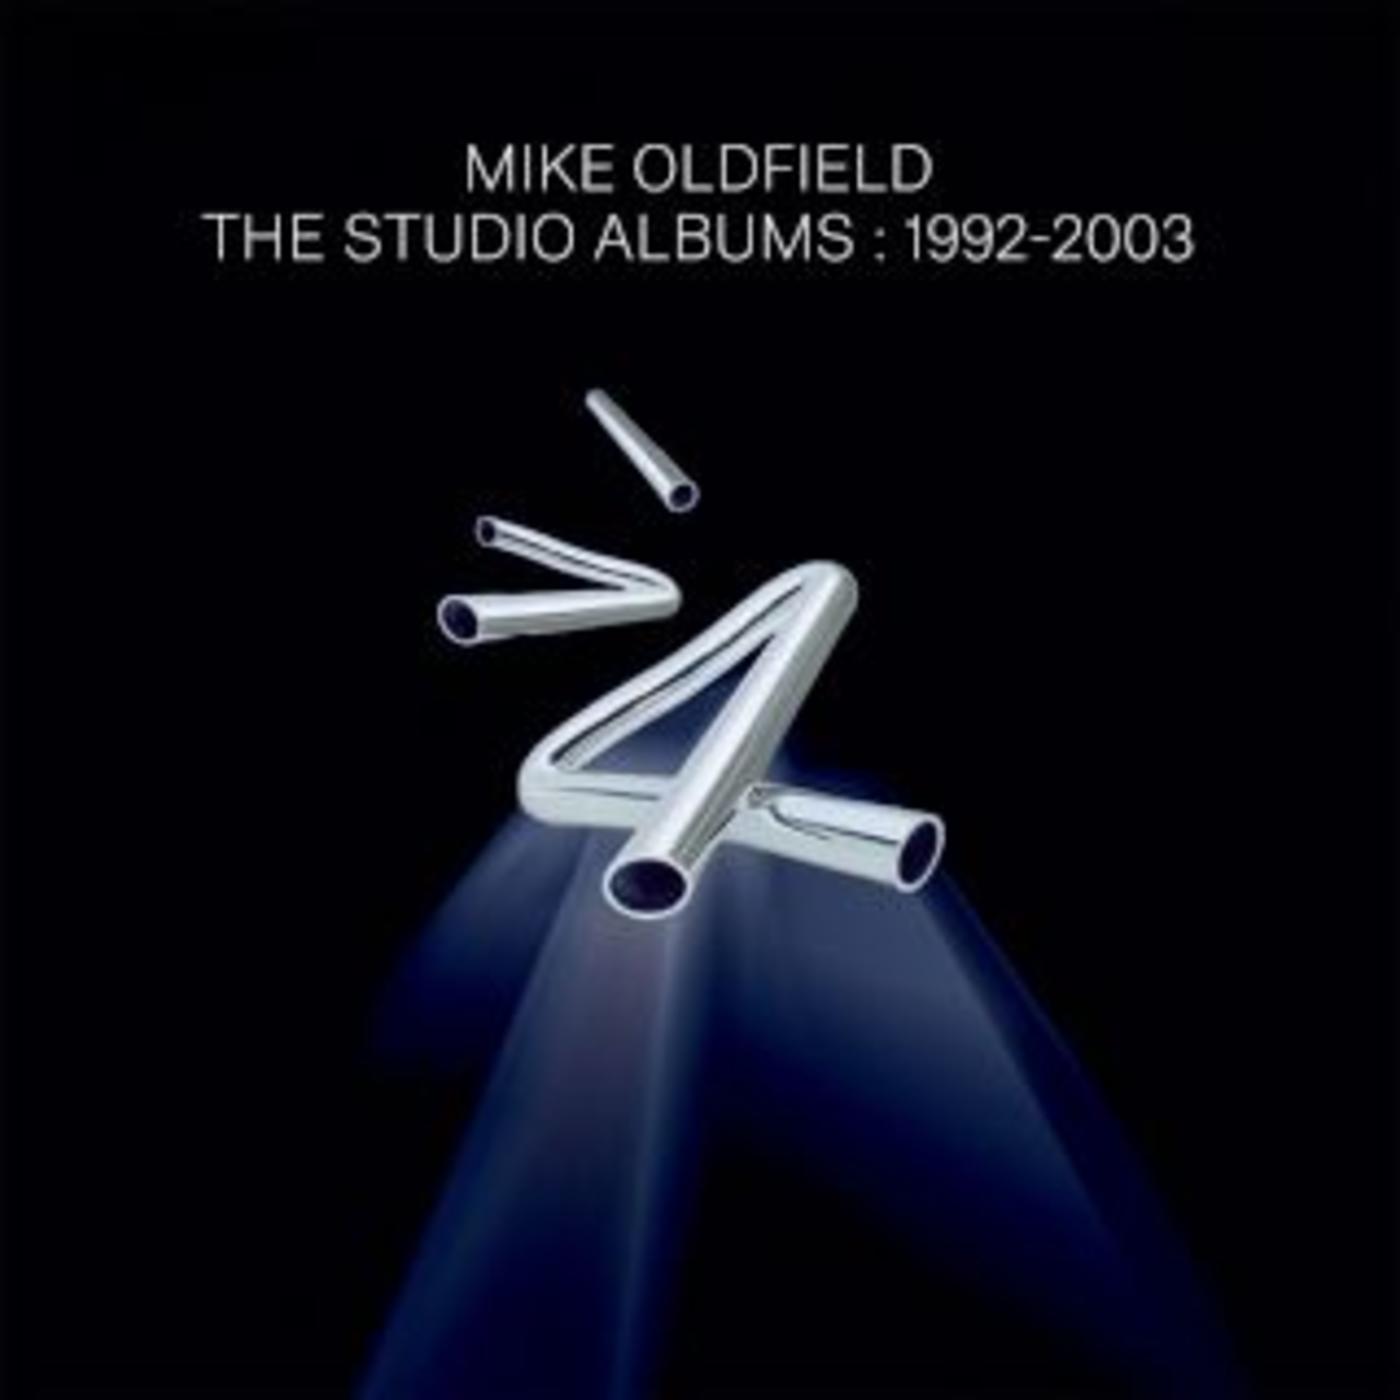 The Studio Albums: 1992-2003